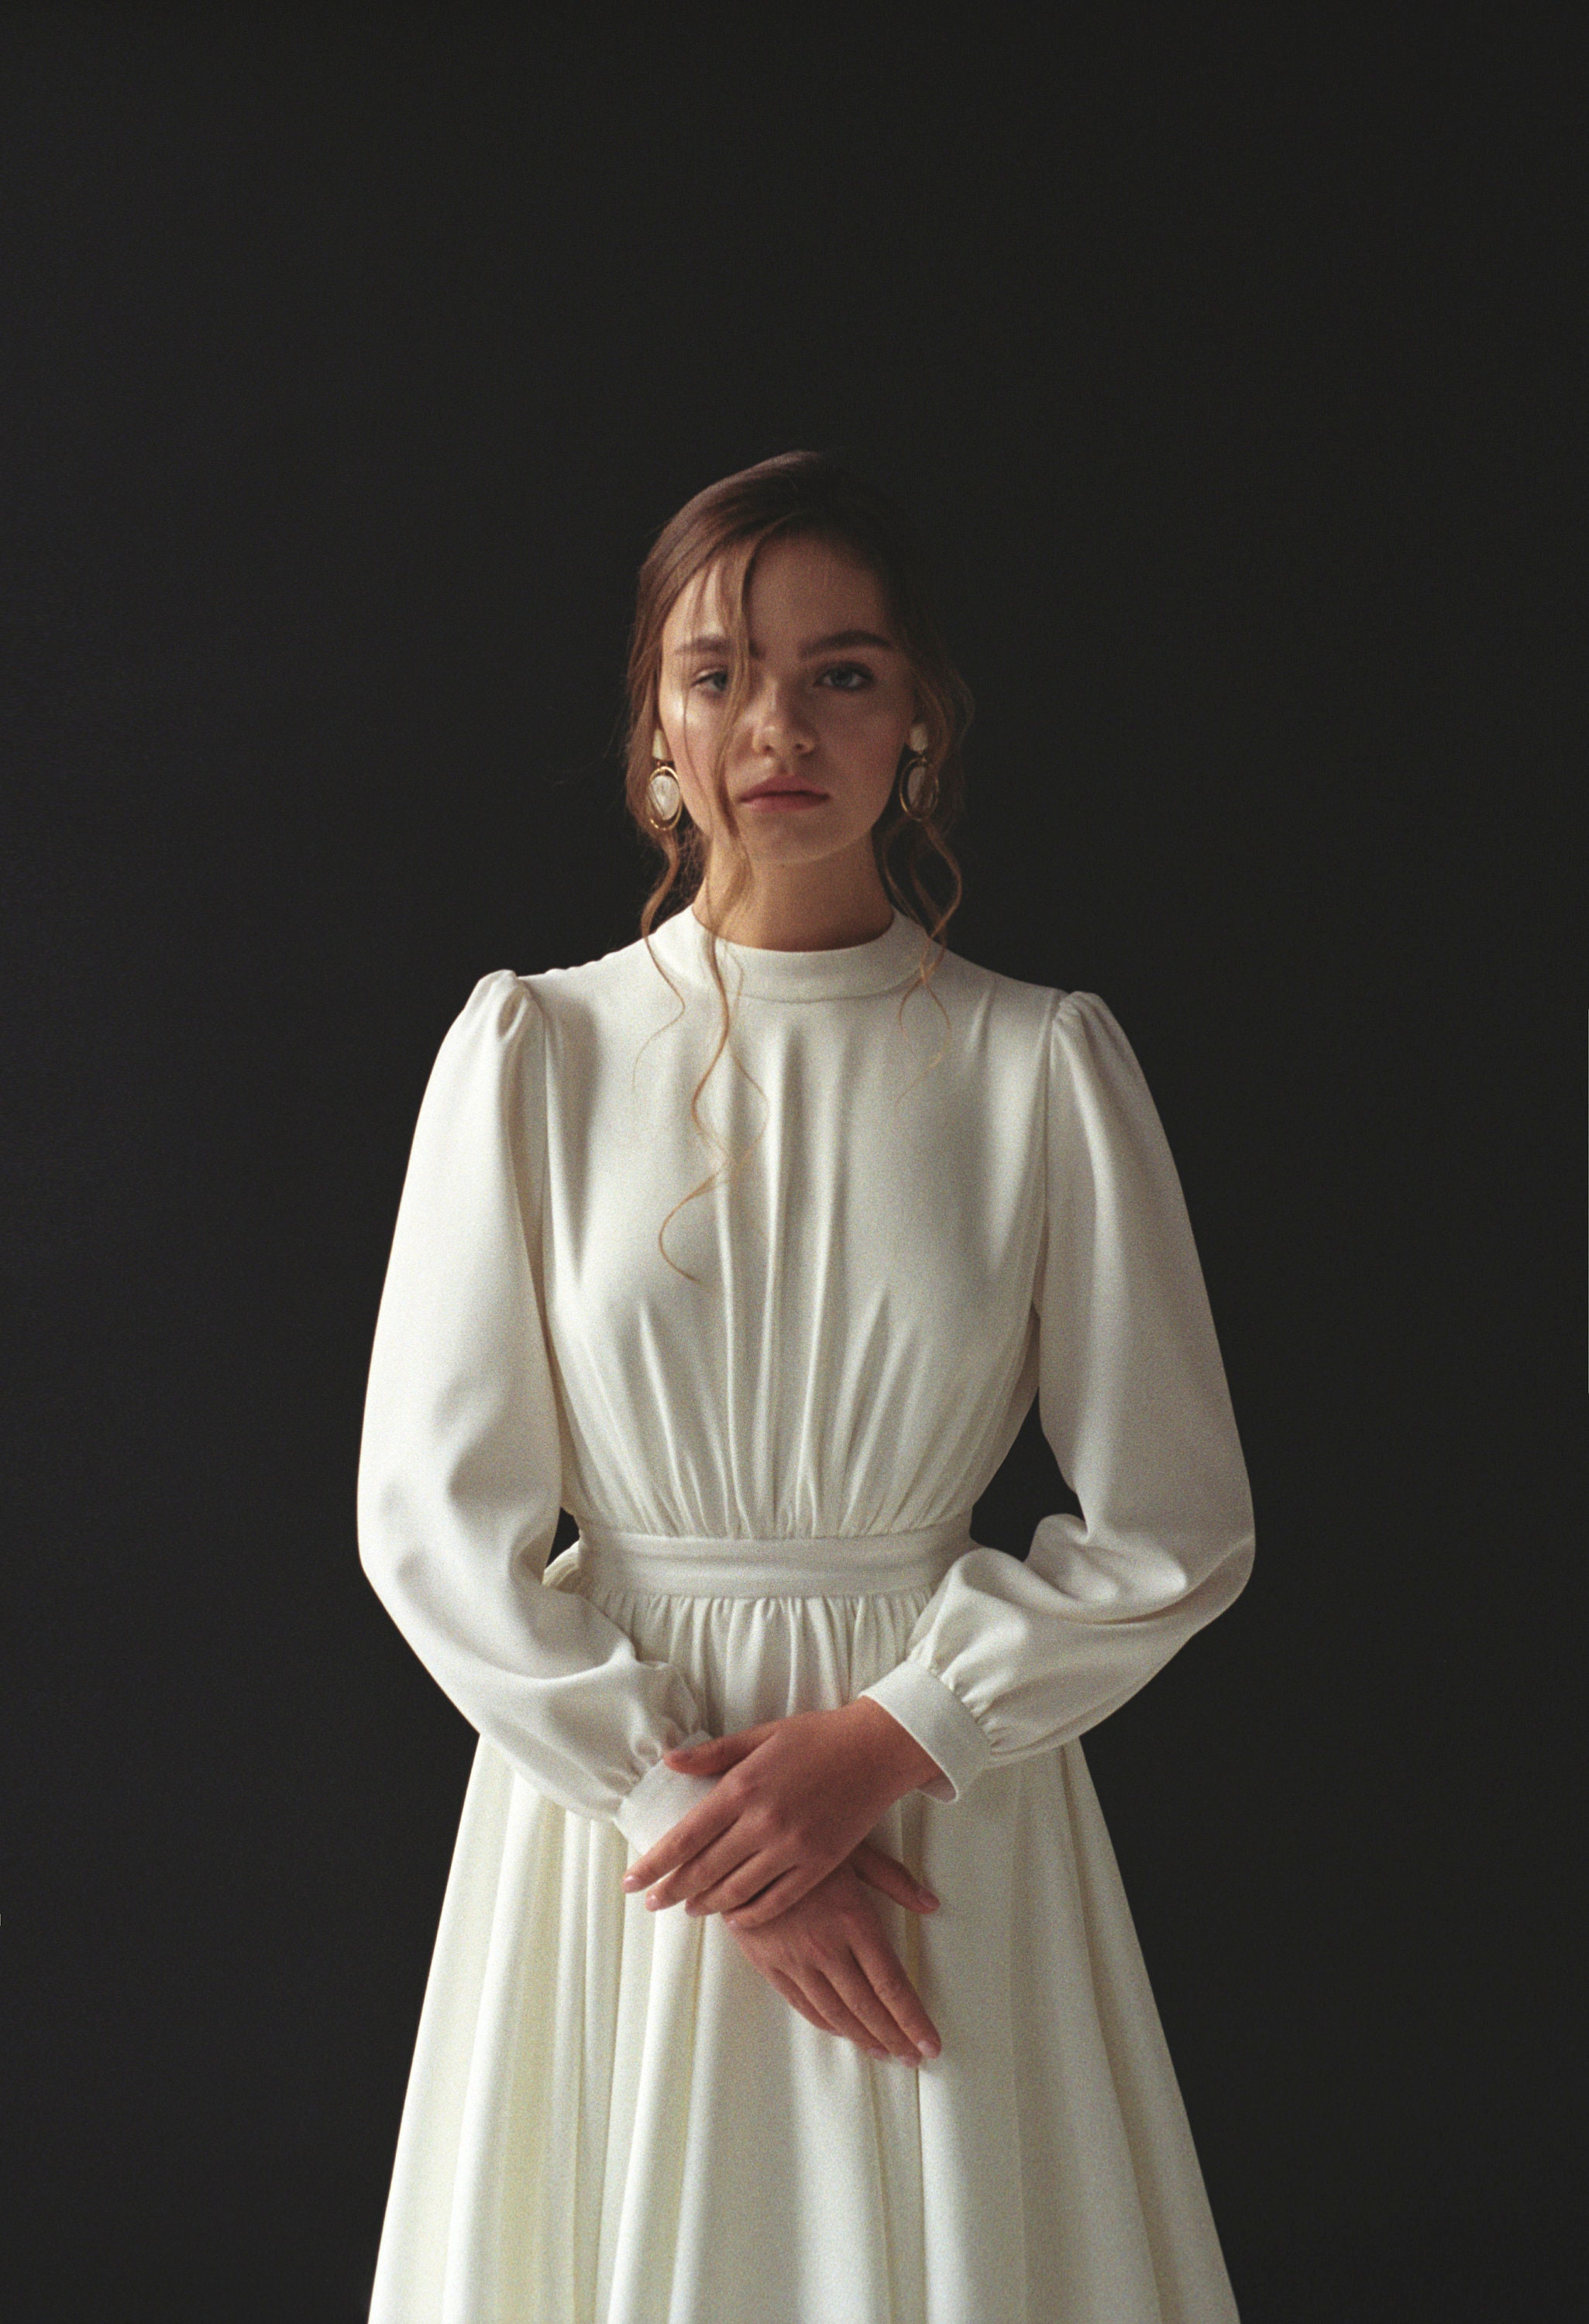 Long Sleeve Wedding Dress Modest Boho Wedding Dress Minimalist - Etsy UK